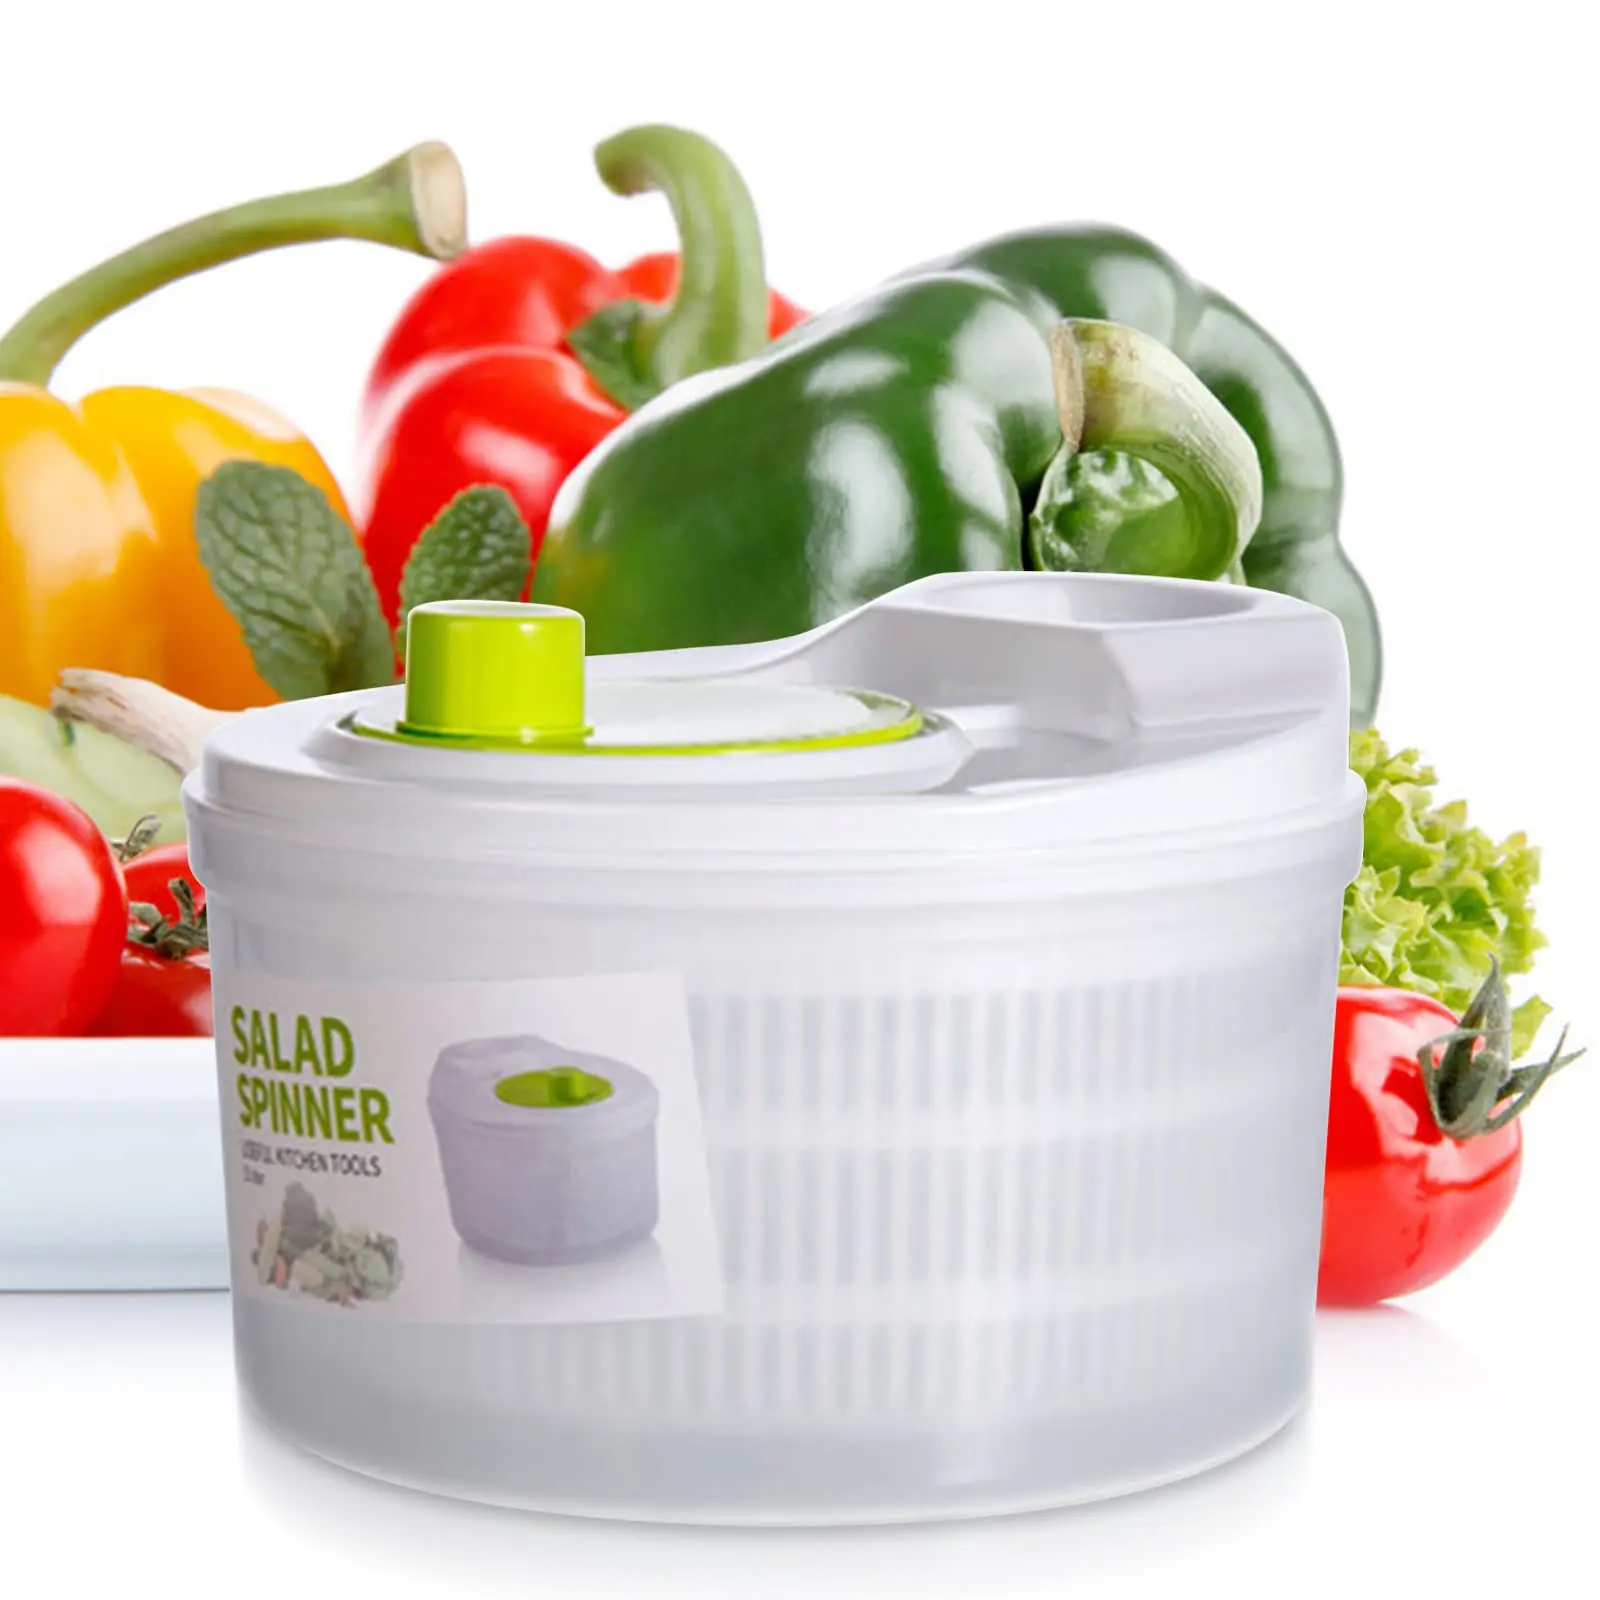 

Кухонная емкость для фруктов, овощей, салата, салат, сушилка для салата, Вегетарианская крышка, Спиннер со складными аксессуарами, мойка